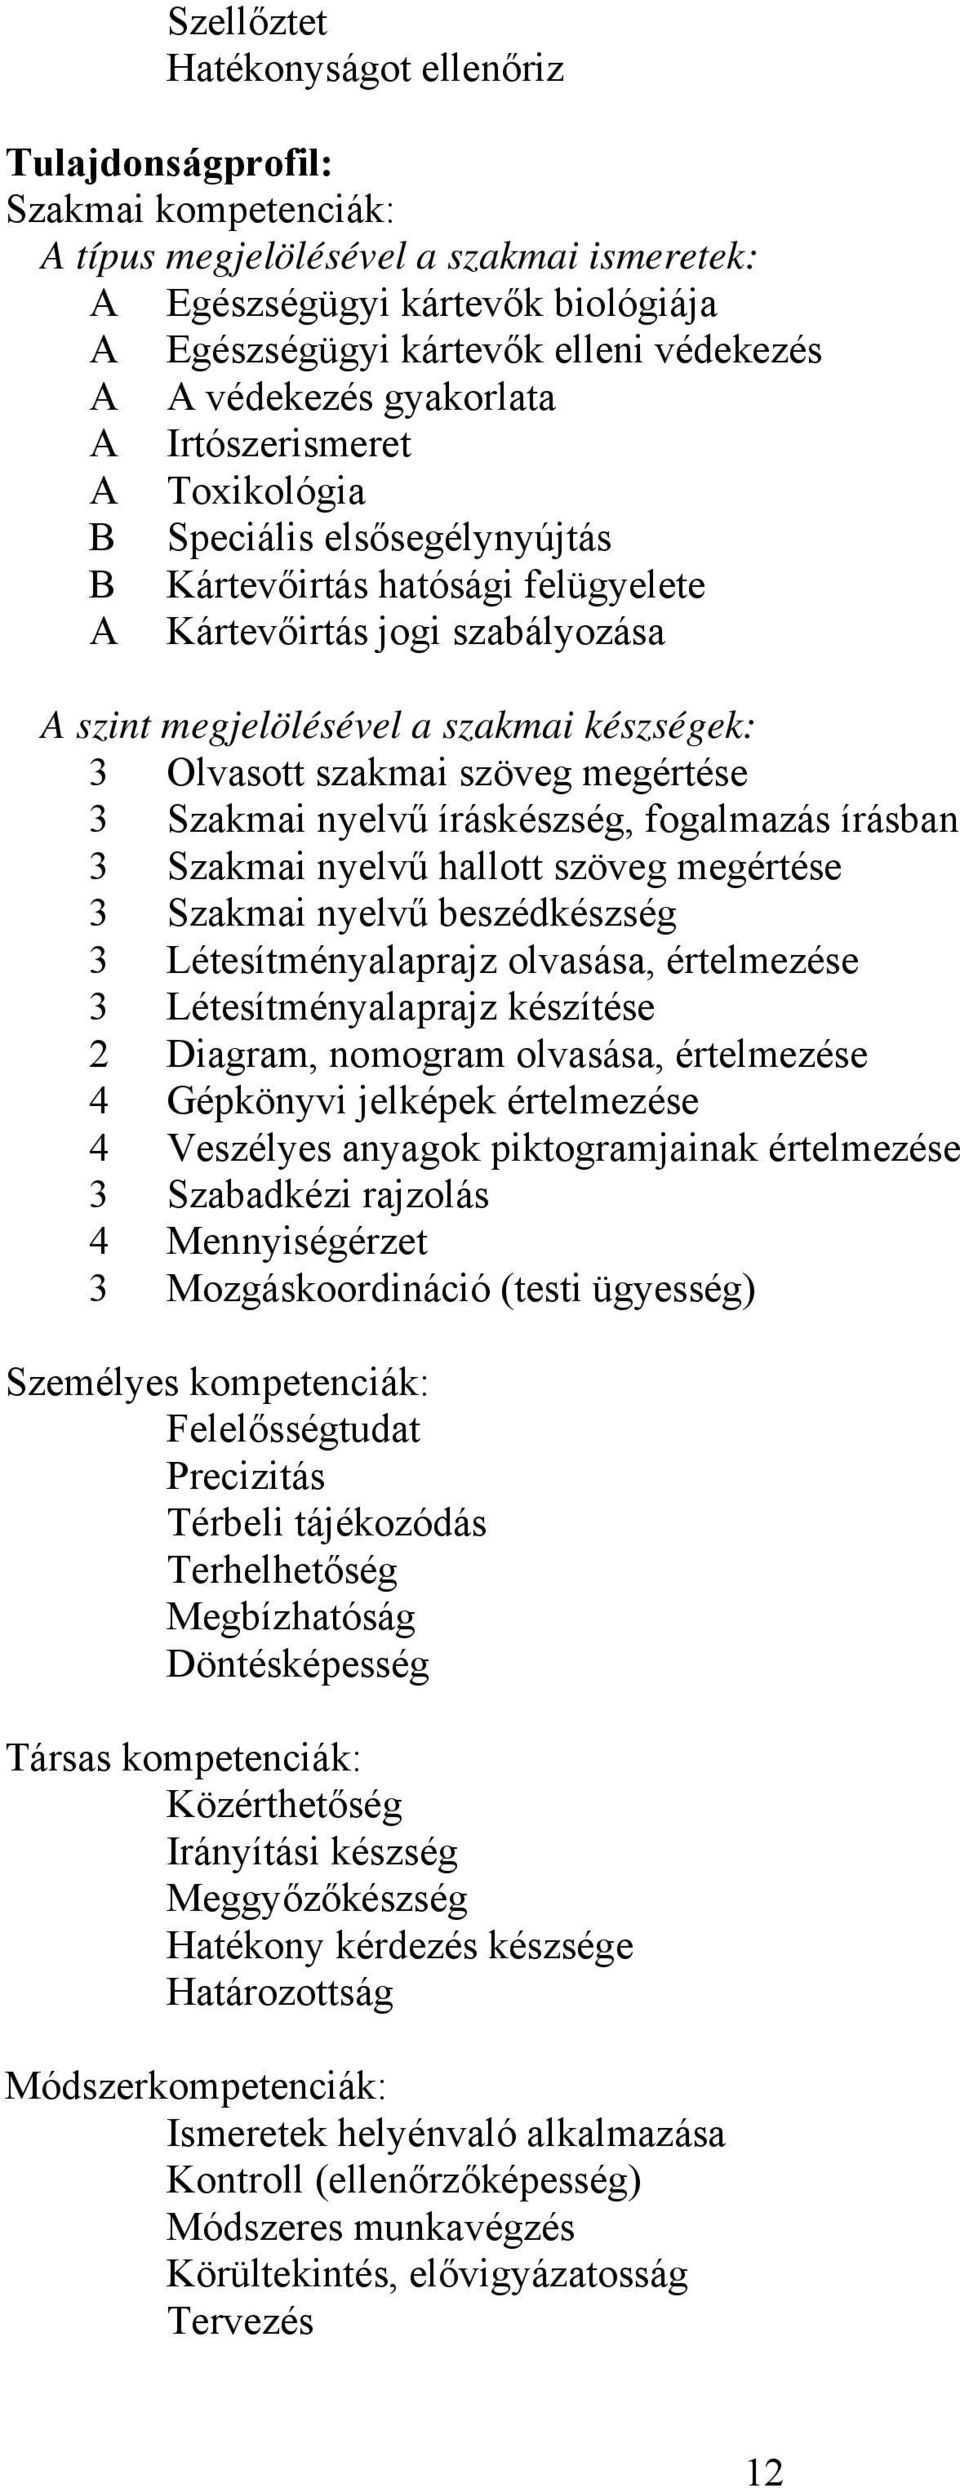 Olvasott szakmai szöveg megértése 3 Szakmai nyelvű íráskészség, fogalmazás írásban 3 Szakmai nyelvű hallott szöveg megértése 3 Szakmai nyelvű beszédkészség 3 Létesítményalaprajz olvasása, értelmezése